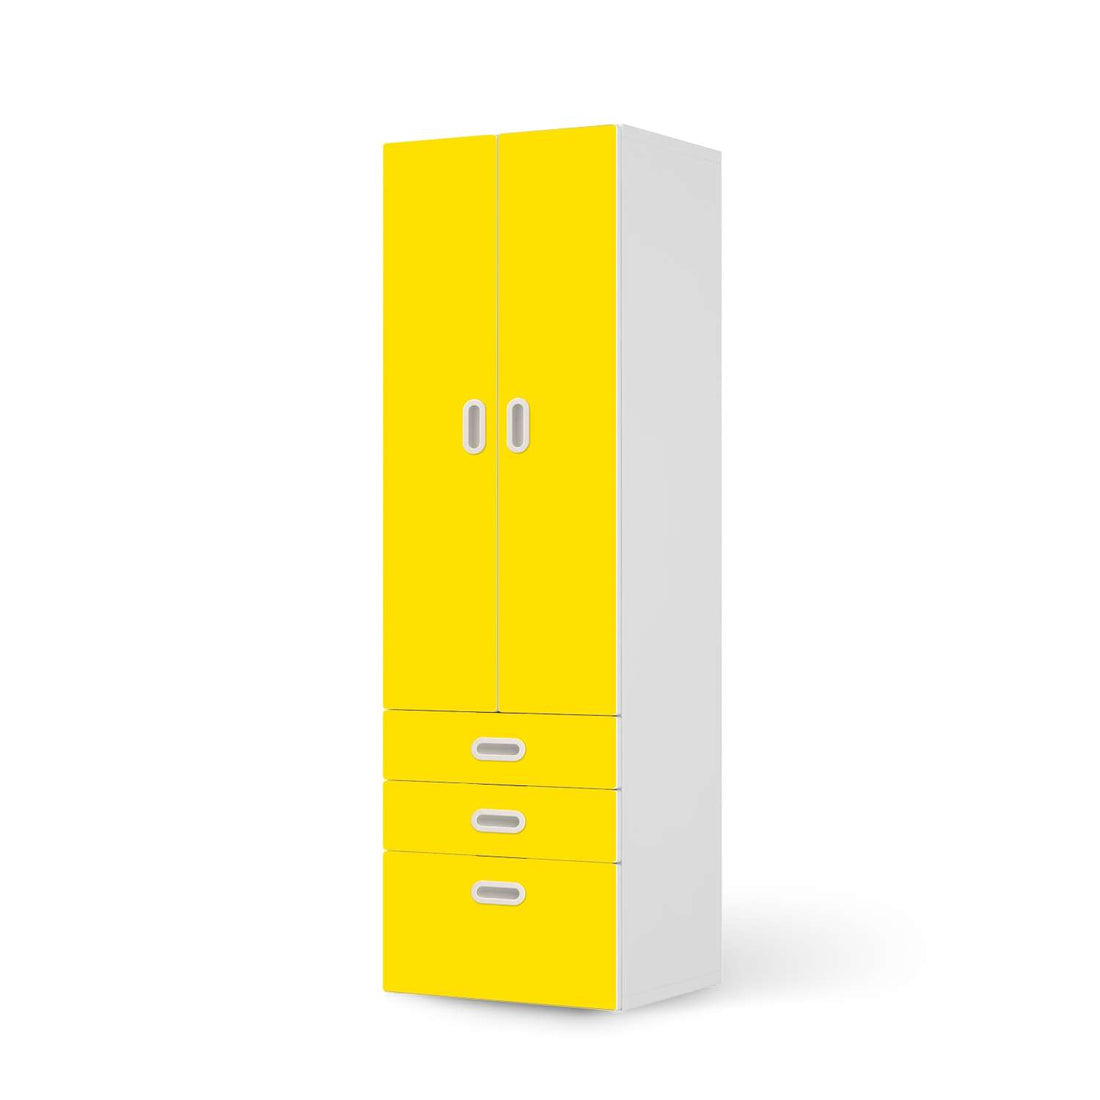 Klebefolie Gelb Dark - IKEA Stuva / Fritids kombiniert - 3 Schubladen und 2 große Türen  - weiss